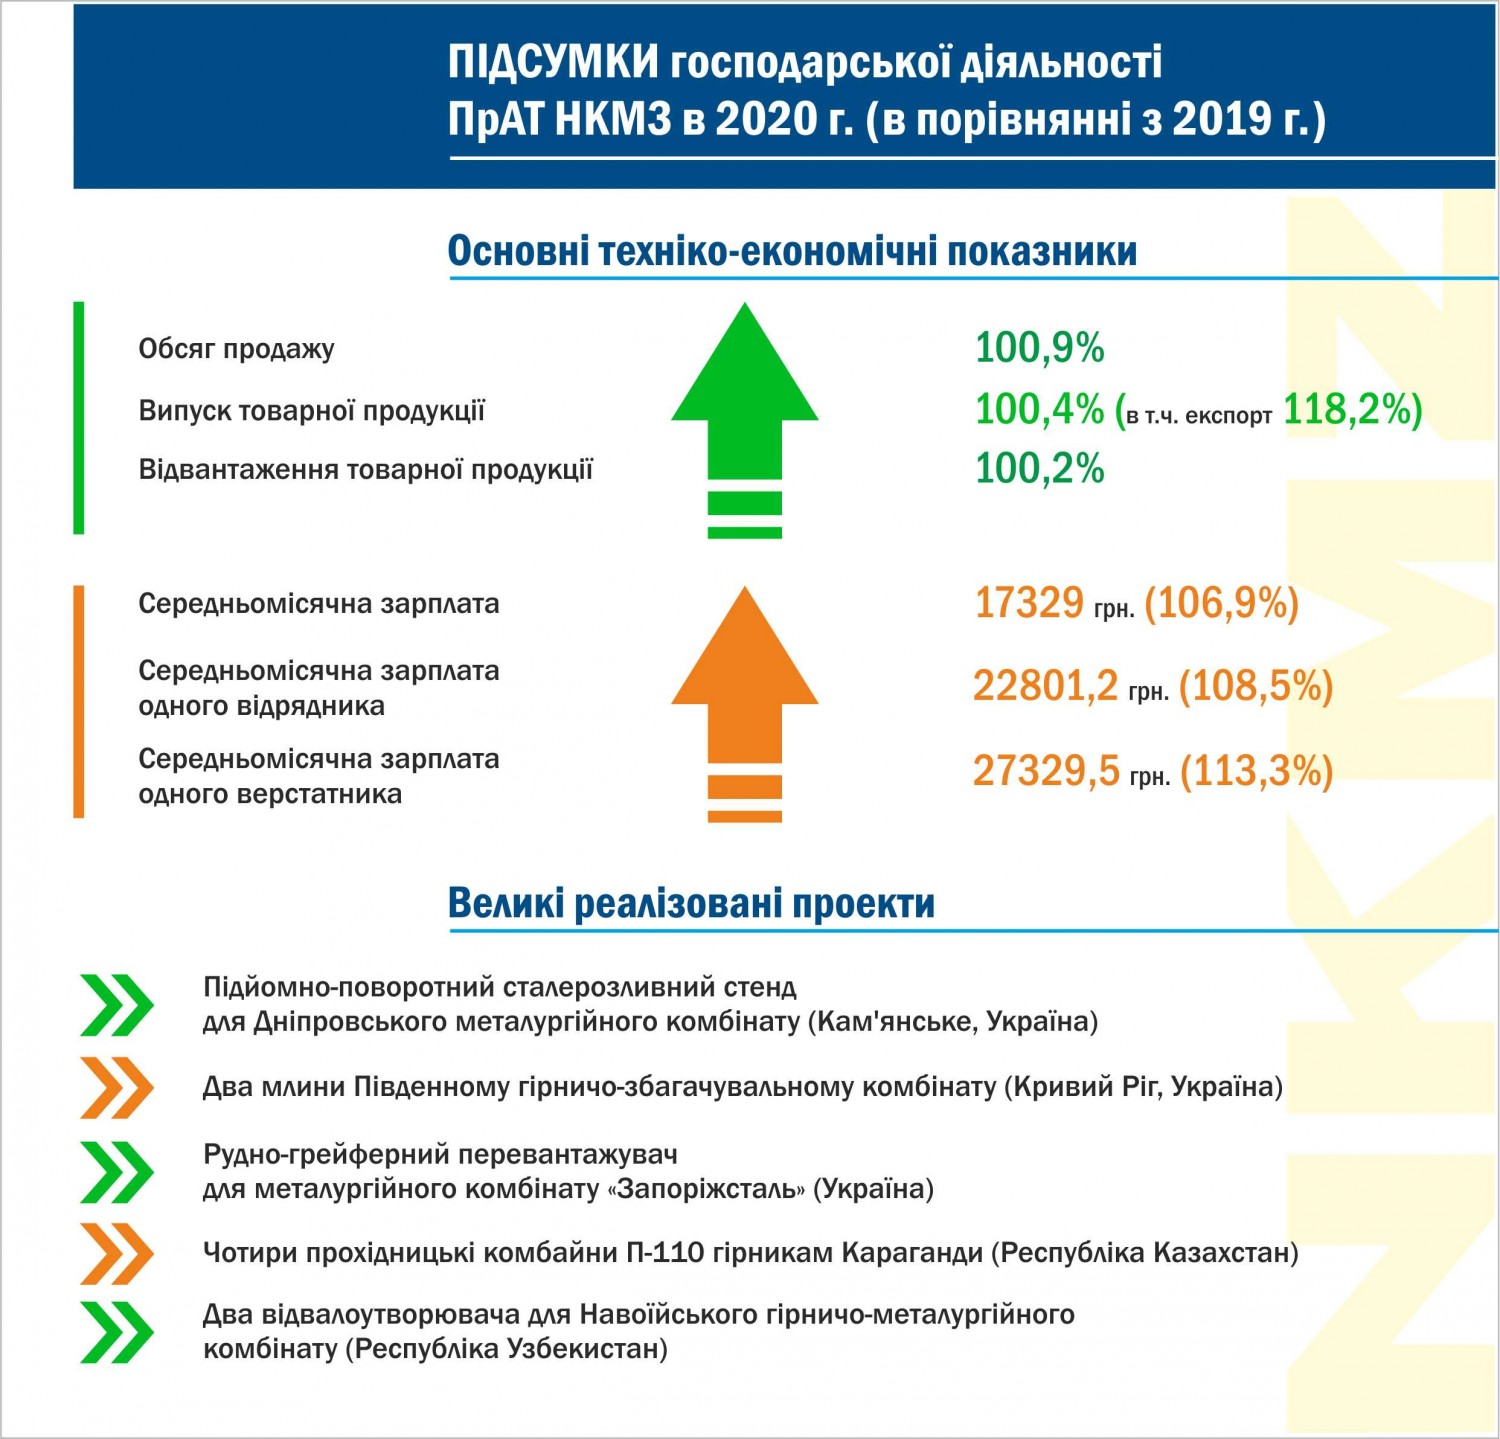 Новокраматорський машинобудівний завод (Краматорськ, Донецької області) підвів підсумки господарської діяльності в 2020 році.